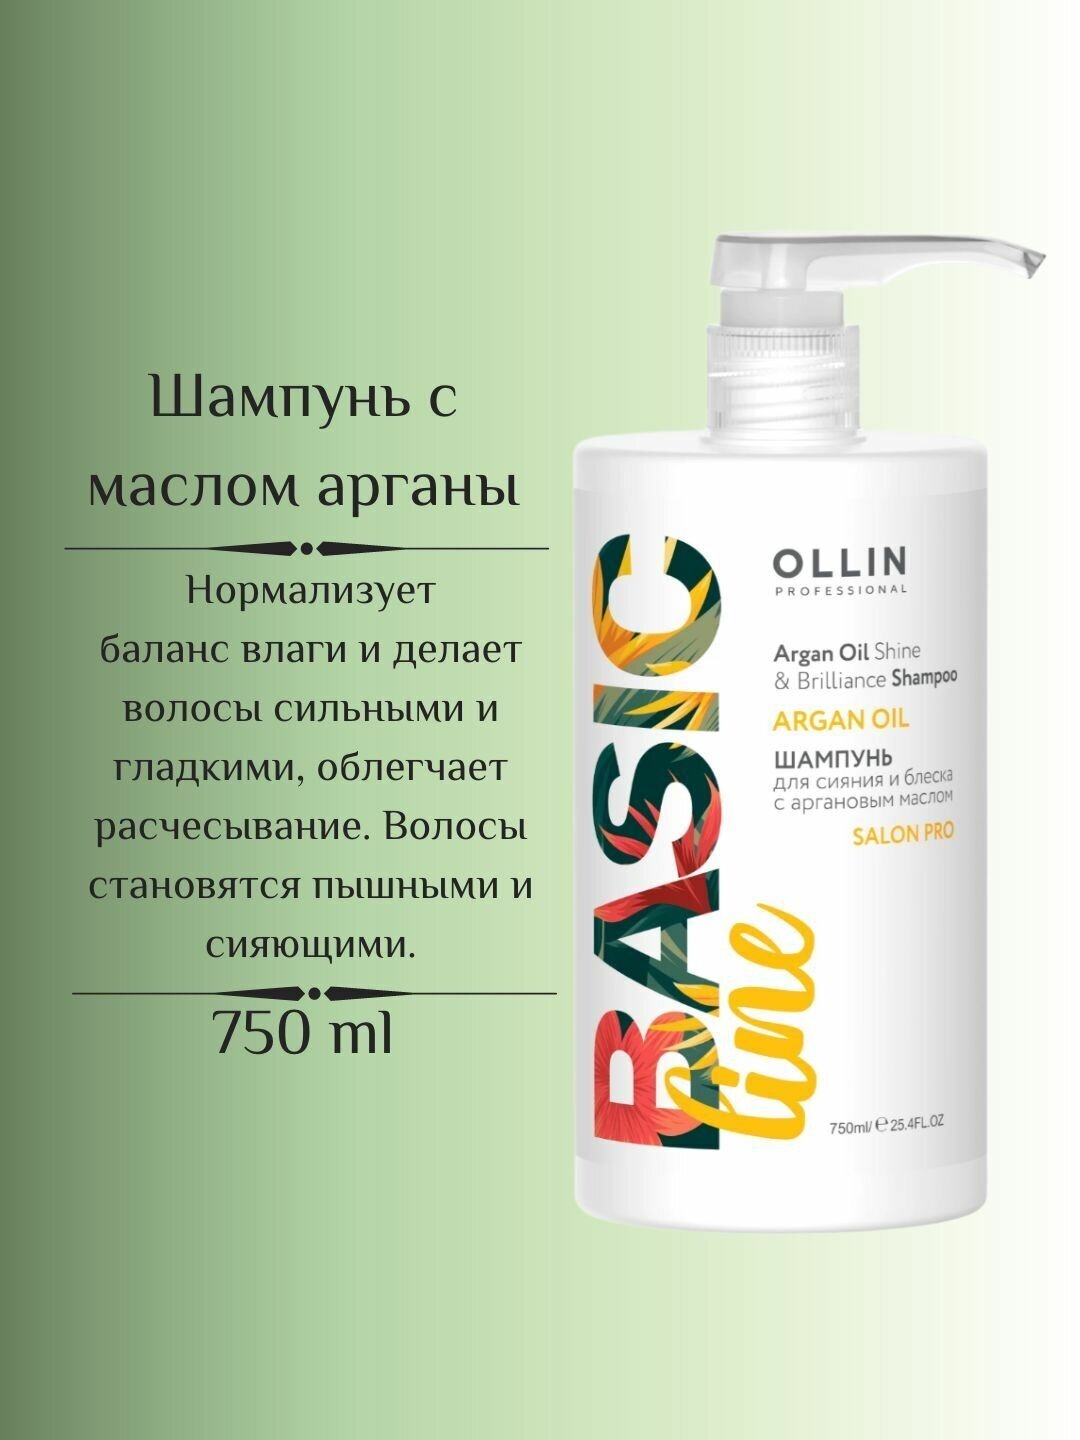 OLLIN Professional шампунь Basic Line Argana Oil для сияния и блеска с аргановым маслом, 750 мл